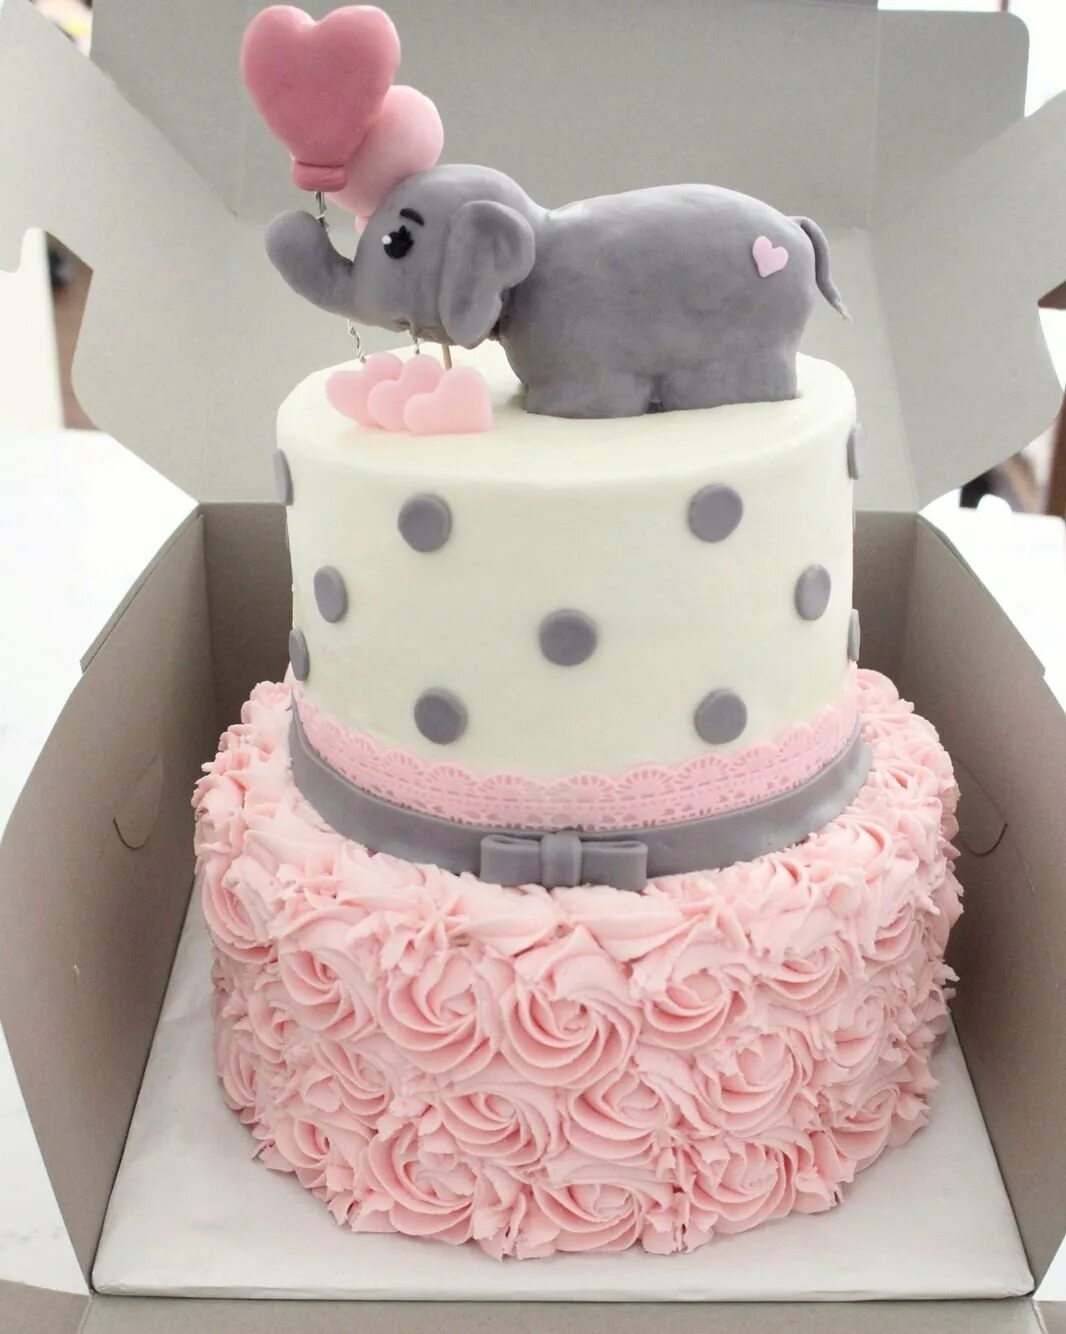 Красивый торт на рождения девочки. Детский розовый торт. Торт детский девочке. Торт на 2 года девочке. Тортики для девочек на день рождения 2 года.